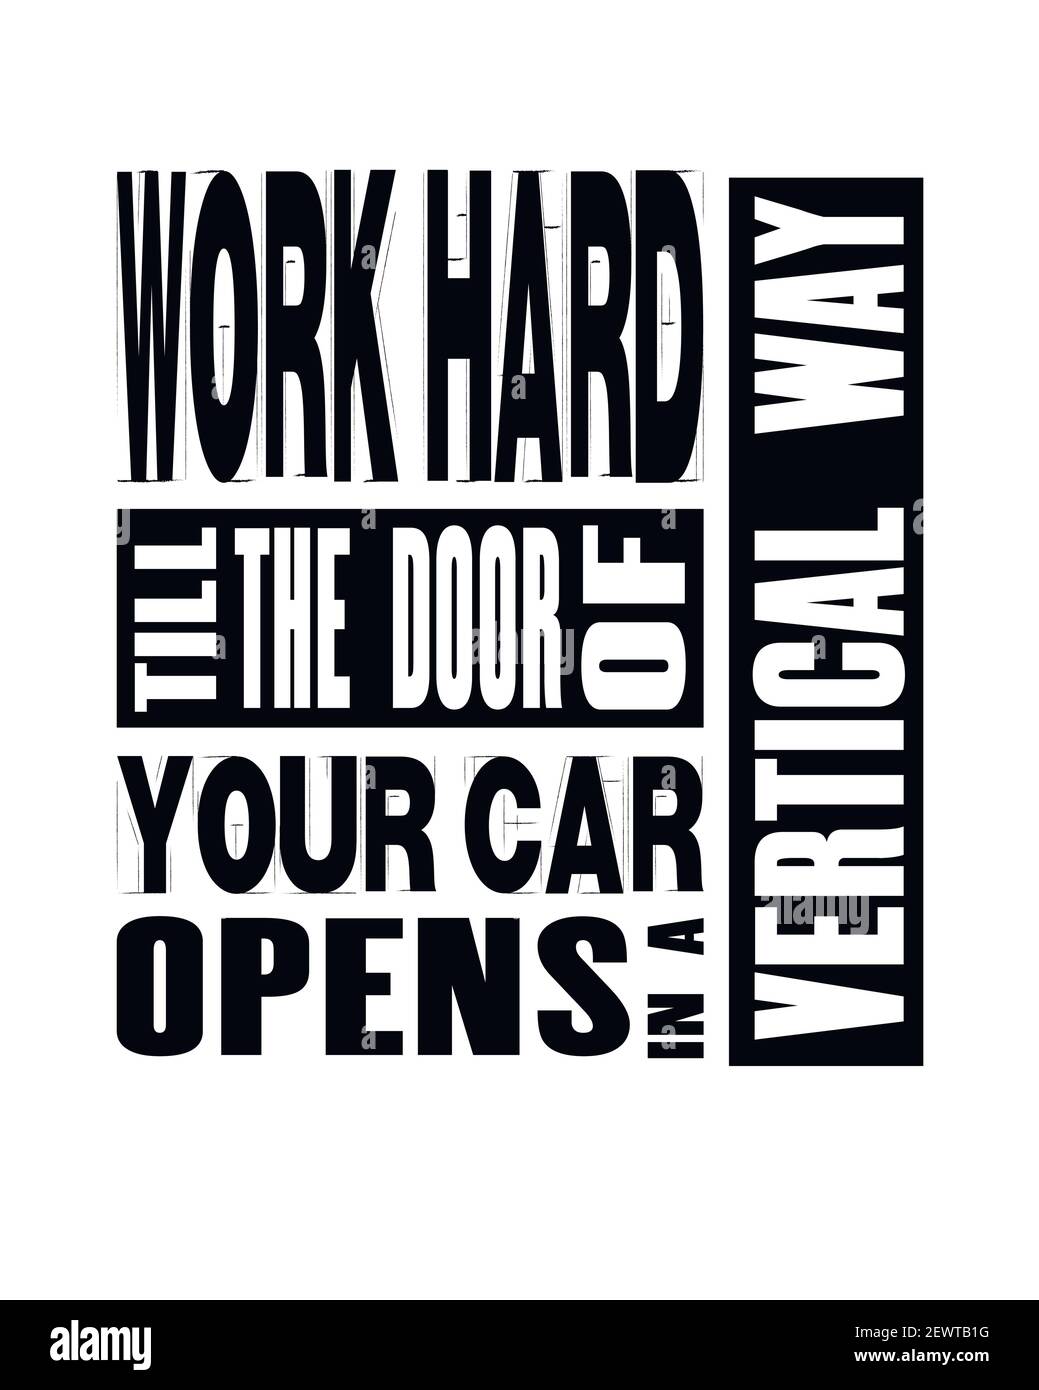 Inspirierendes Motivationsangebot mit Textarbeit, bis sich die Tür Ihres Autos vertikal öffnet. Poster mit Vektortypografie und T-Shirt Design Konzept. Stock Vektor